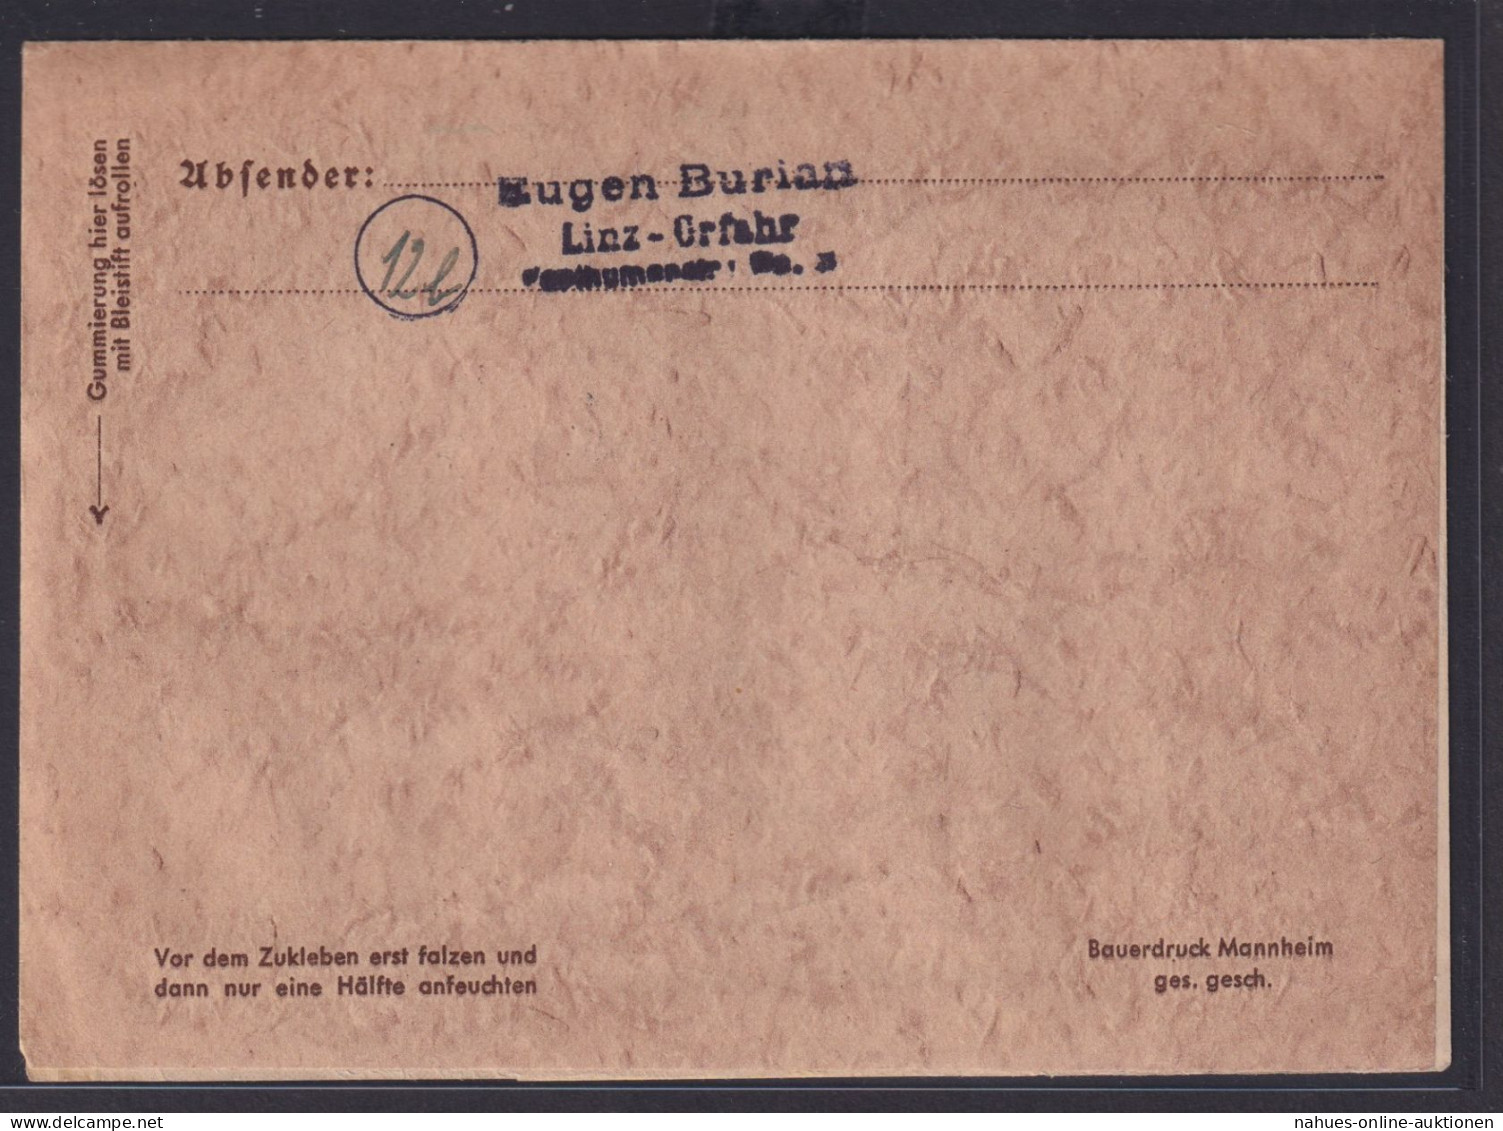 Ostmark Linz Deutsches Reich Brief EF 898 Landesschießen Tirol Österreich - Lettres & Documents